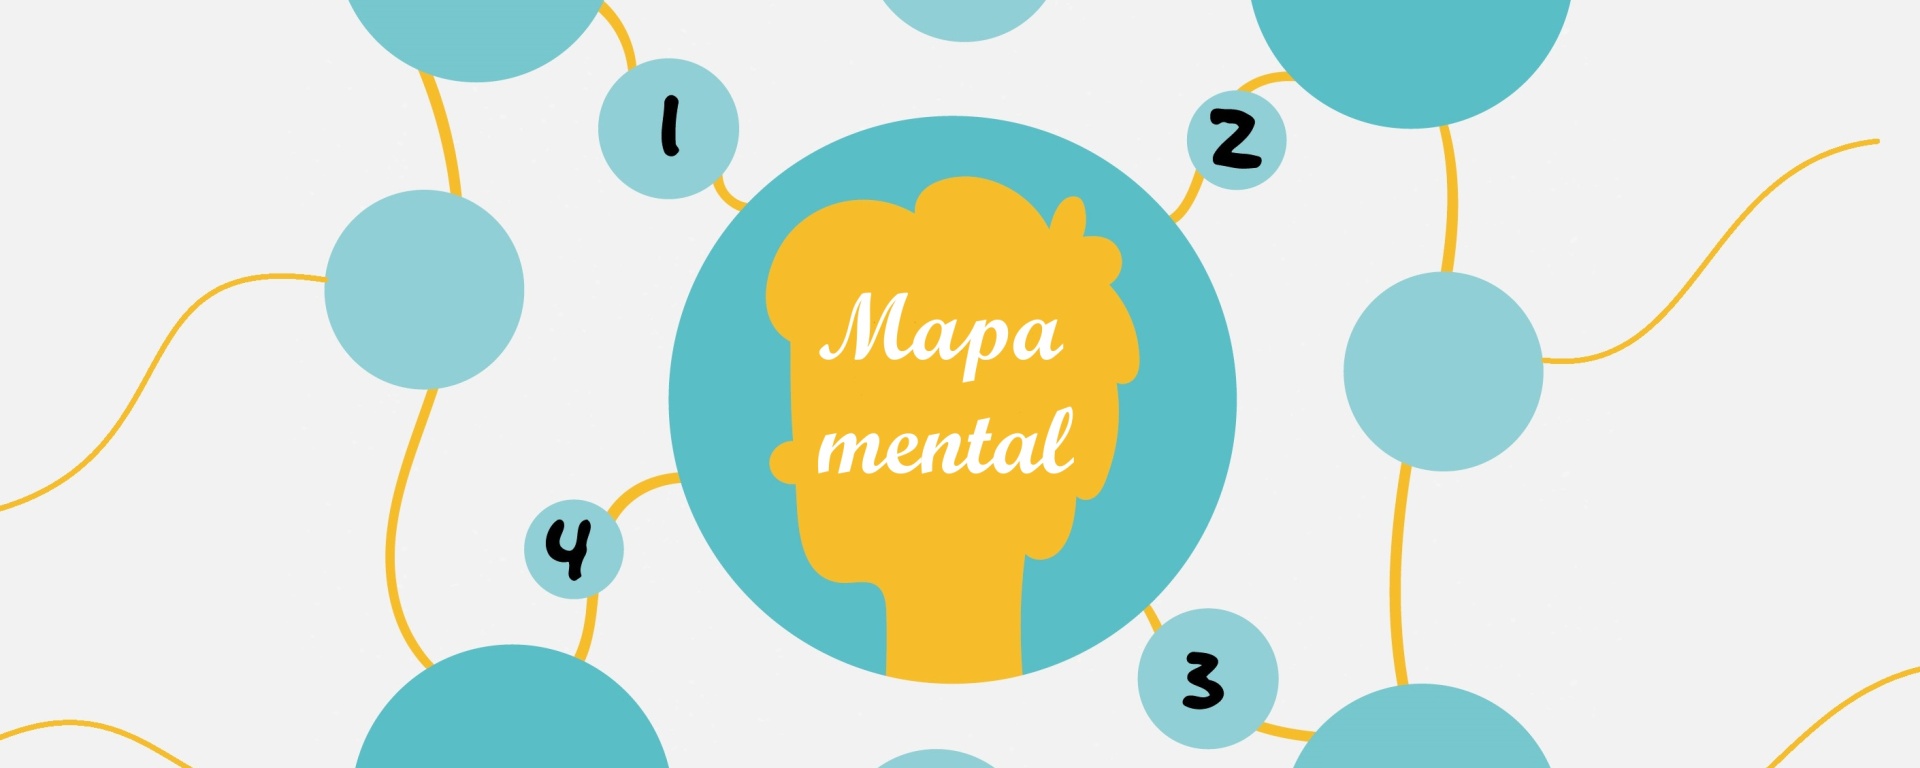 Você sabe o que são mapas mentais e como eles são feitos? Vamos entender.